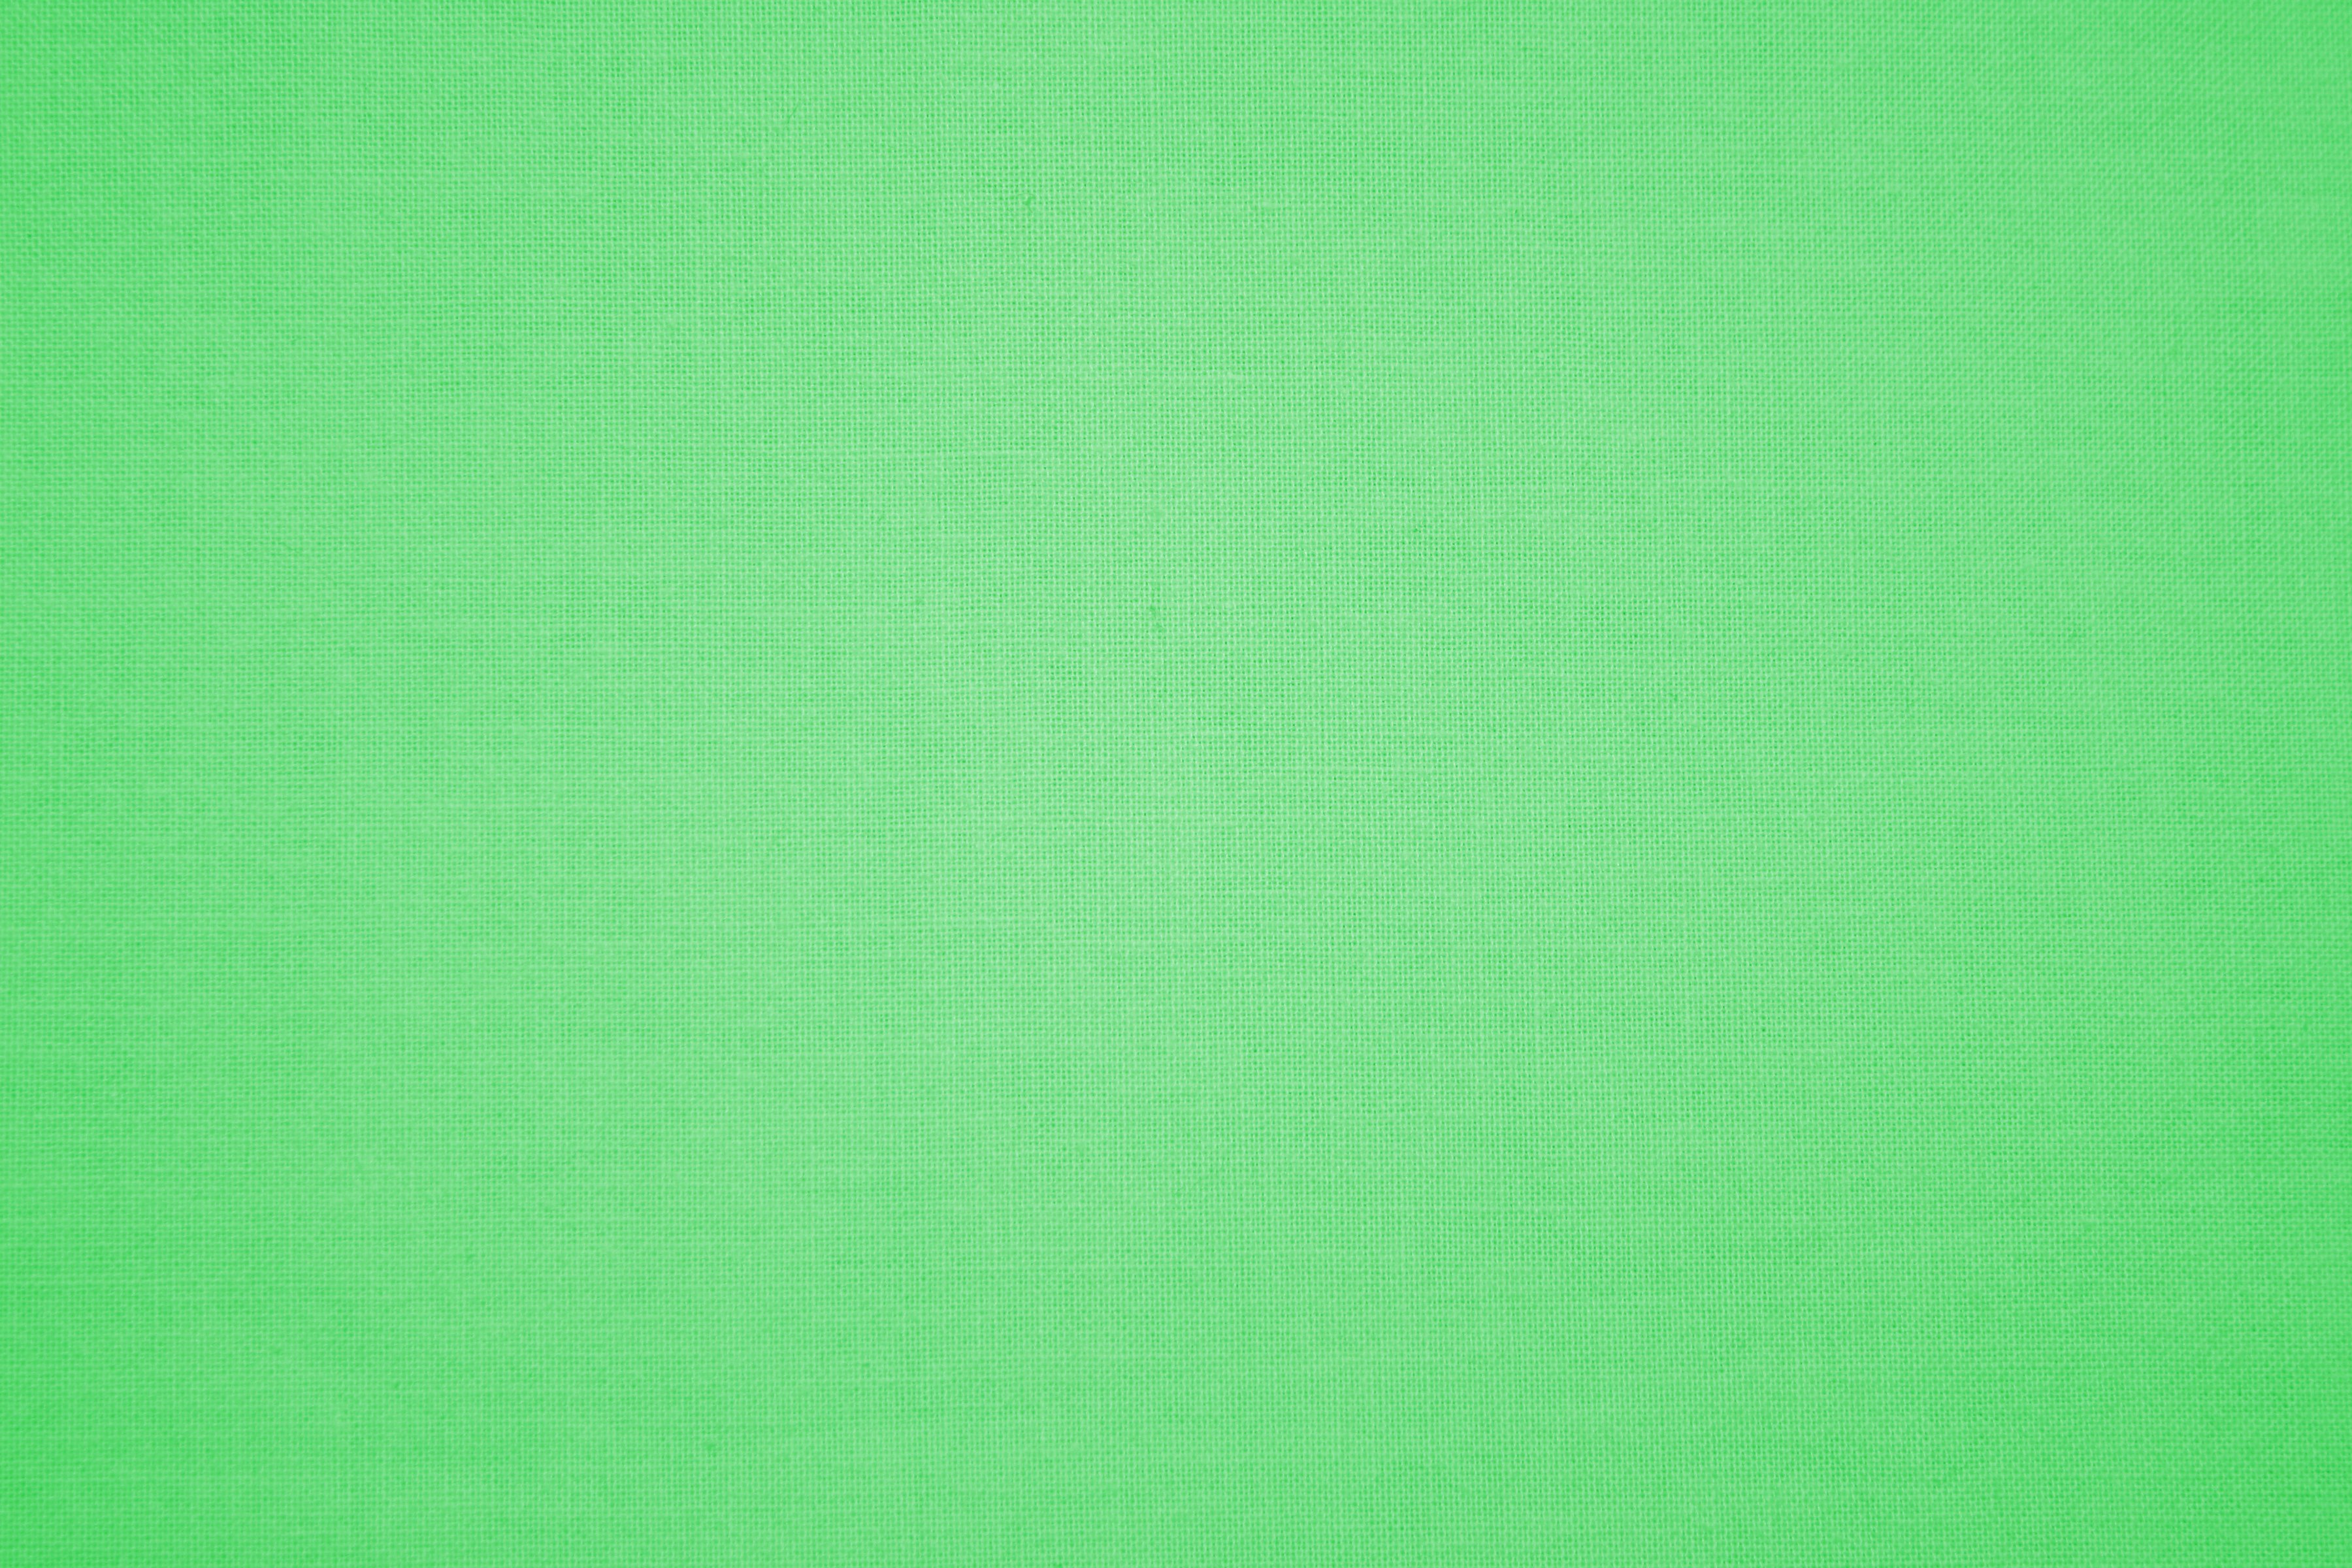 Vải thô xanh nhạt: Vải thô xanh nhạt là một lựa chọn lý tưởng cho những người thích phong cách giản dị và tự nhiên. Màu xanh nhạt tươi sáng và chất liệu vải thô sẽ giúp bạn có một kiểu dáng thật đẹp và trẻ trung. Hãy xem hình ảnh liên quan để tìm hiểu về những thiết kế độc đáo của vải này.